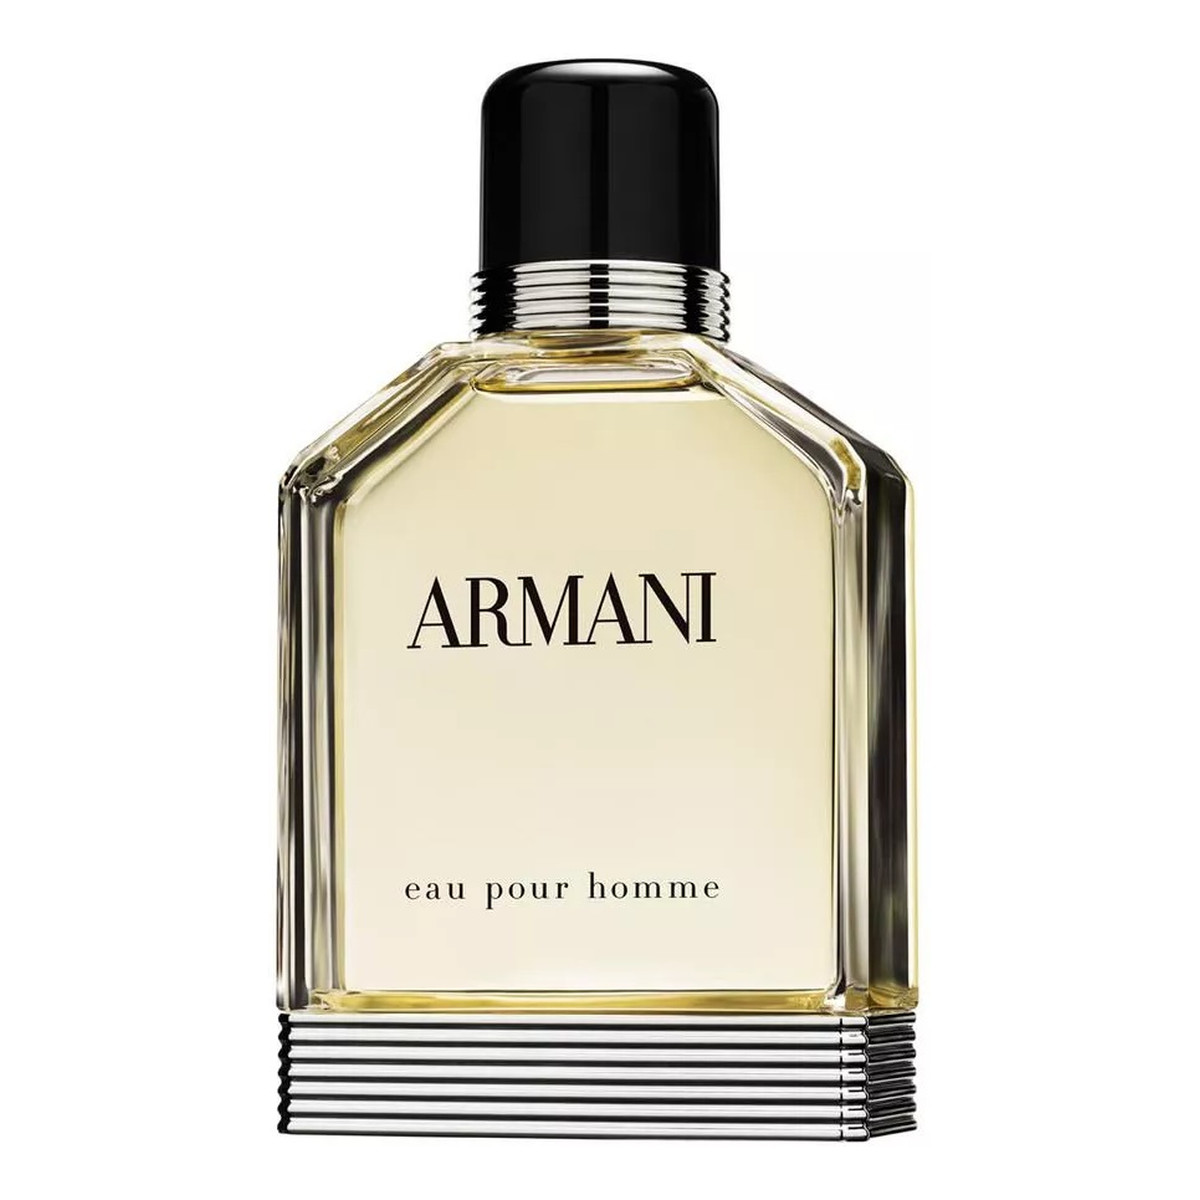 Giorgio Armani Eau Pour Homme 2013 Woda toaletowa spray 50ml